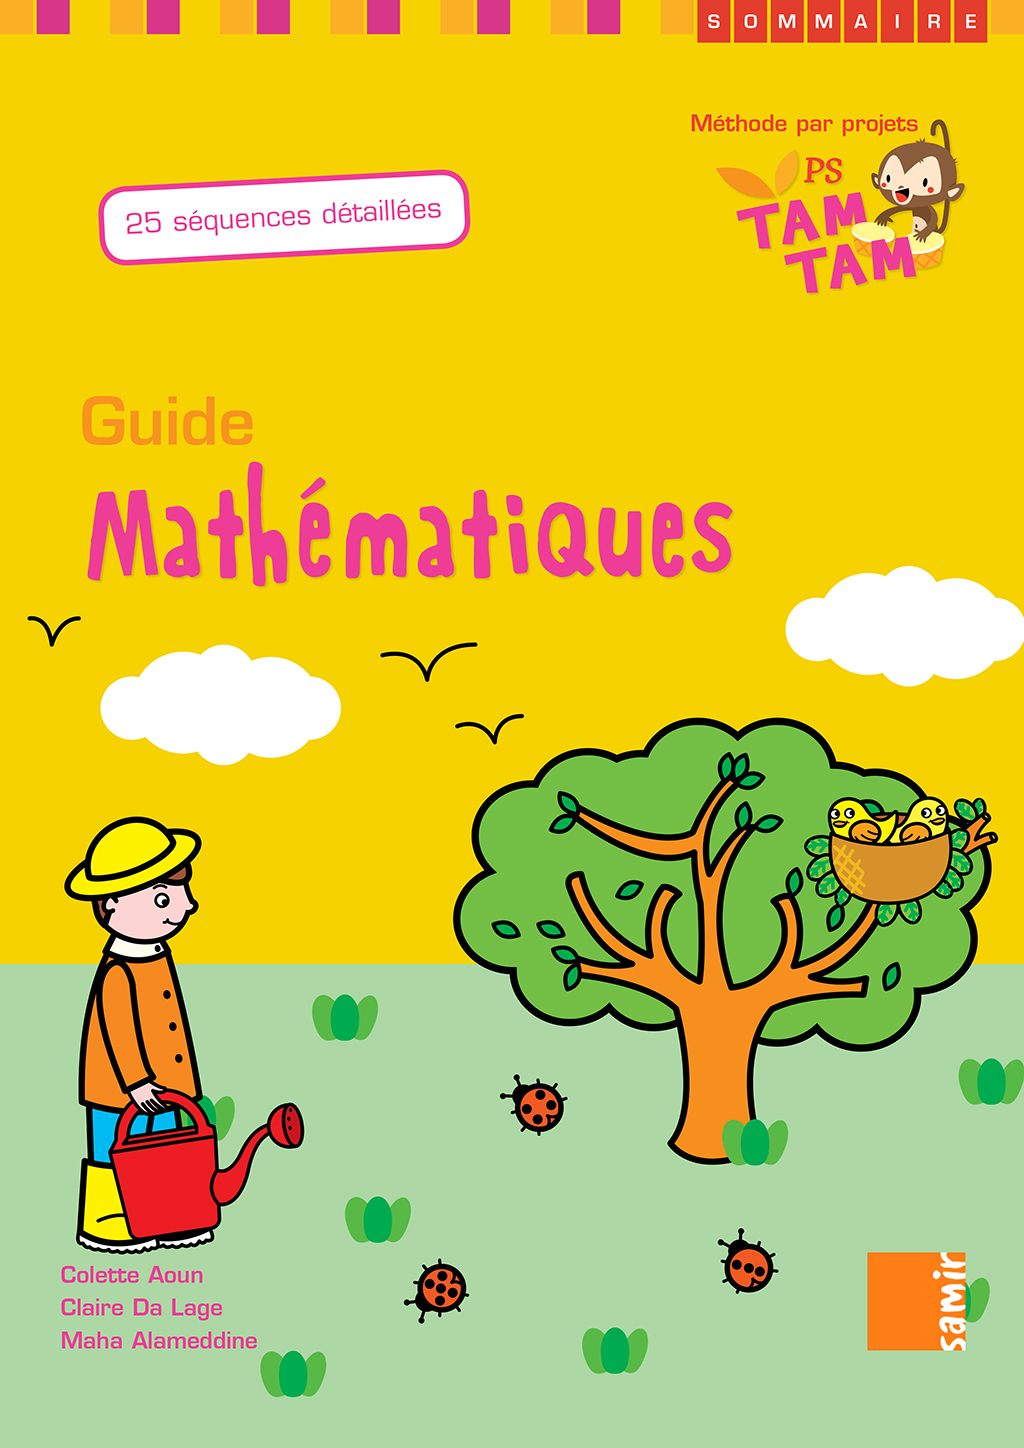 Samir Éditeur - Guide PS – P0 Mathématiques - Couverture